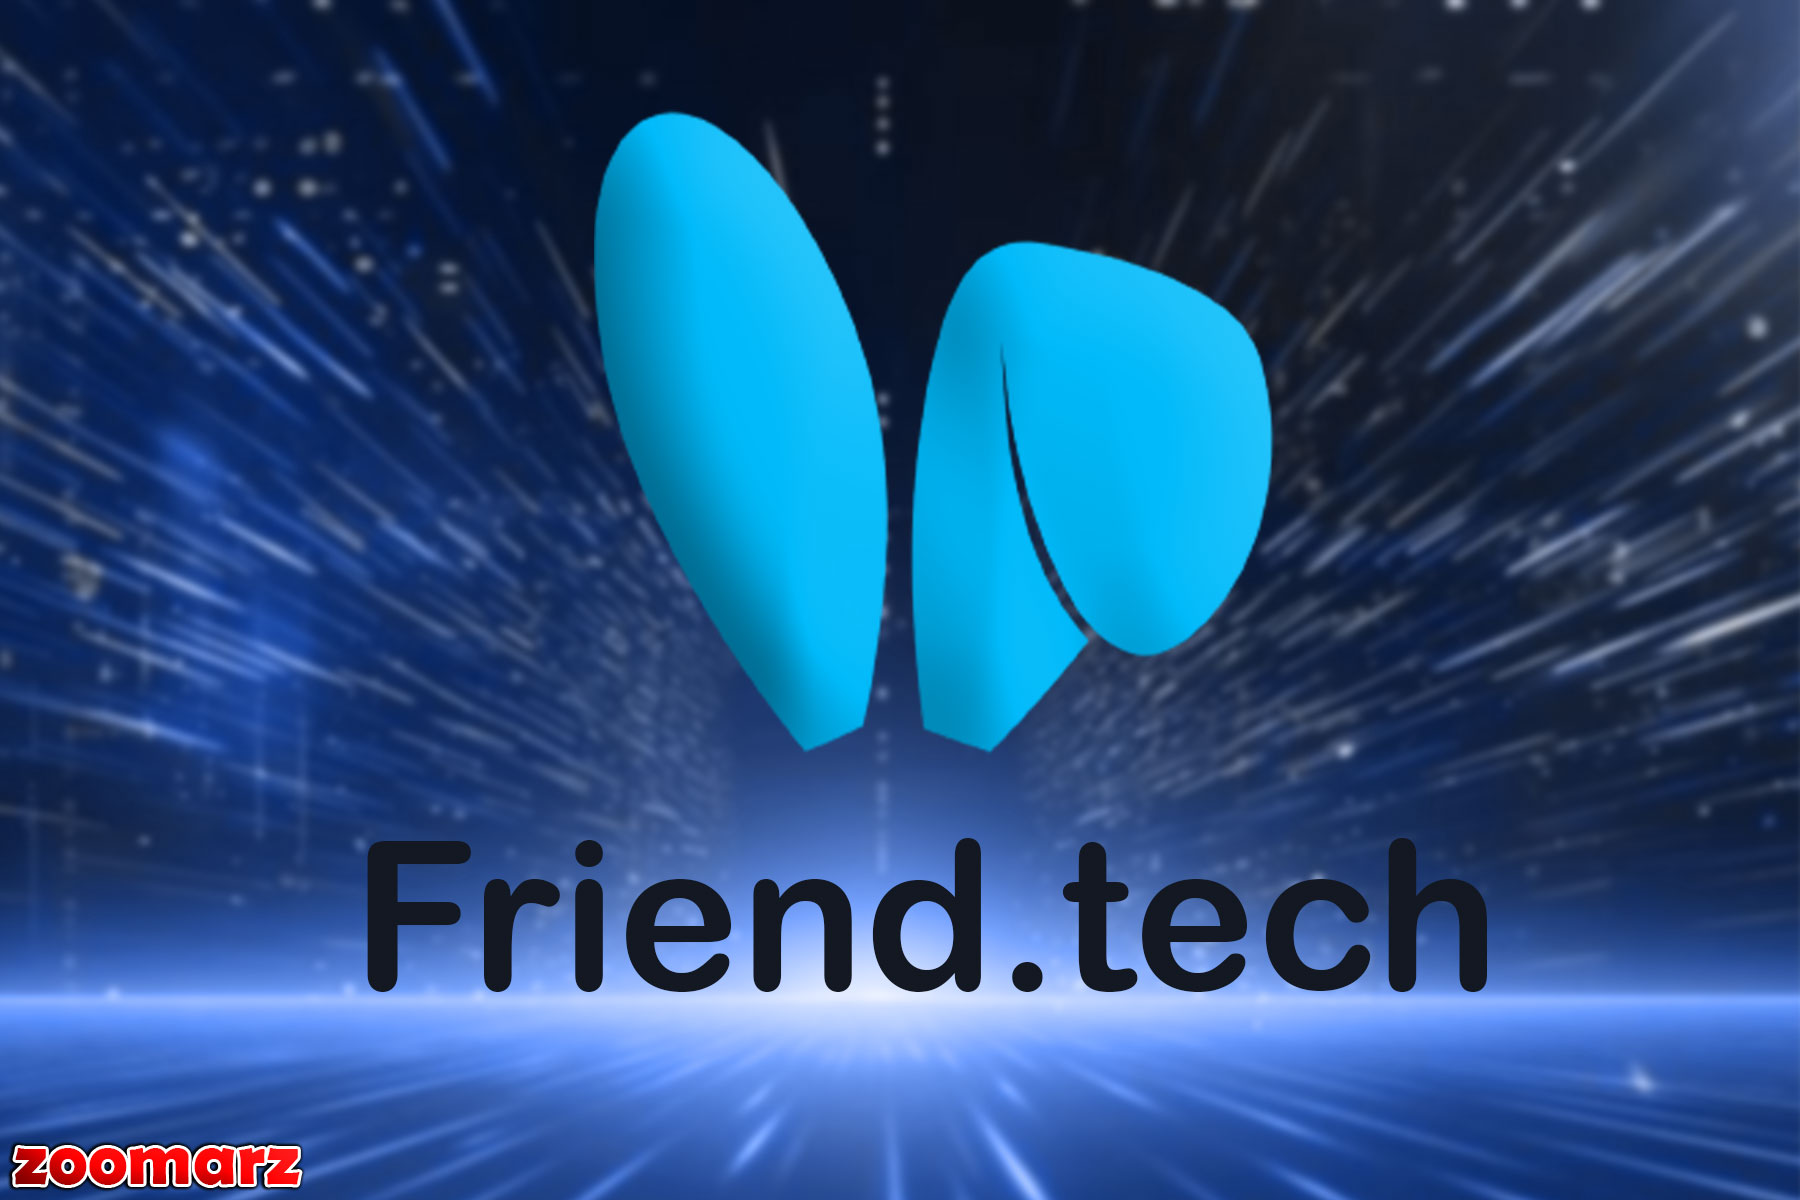 کارمزد Friend.tech پس از اوج ۱.۷ میلیون دلاری ۷۰ درصد کاهش می یابد